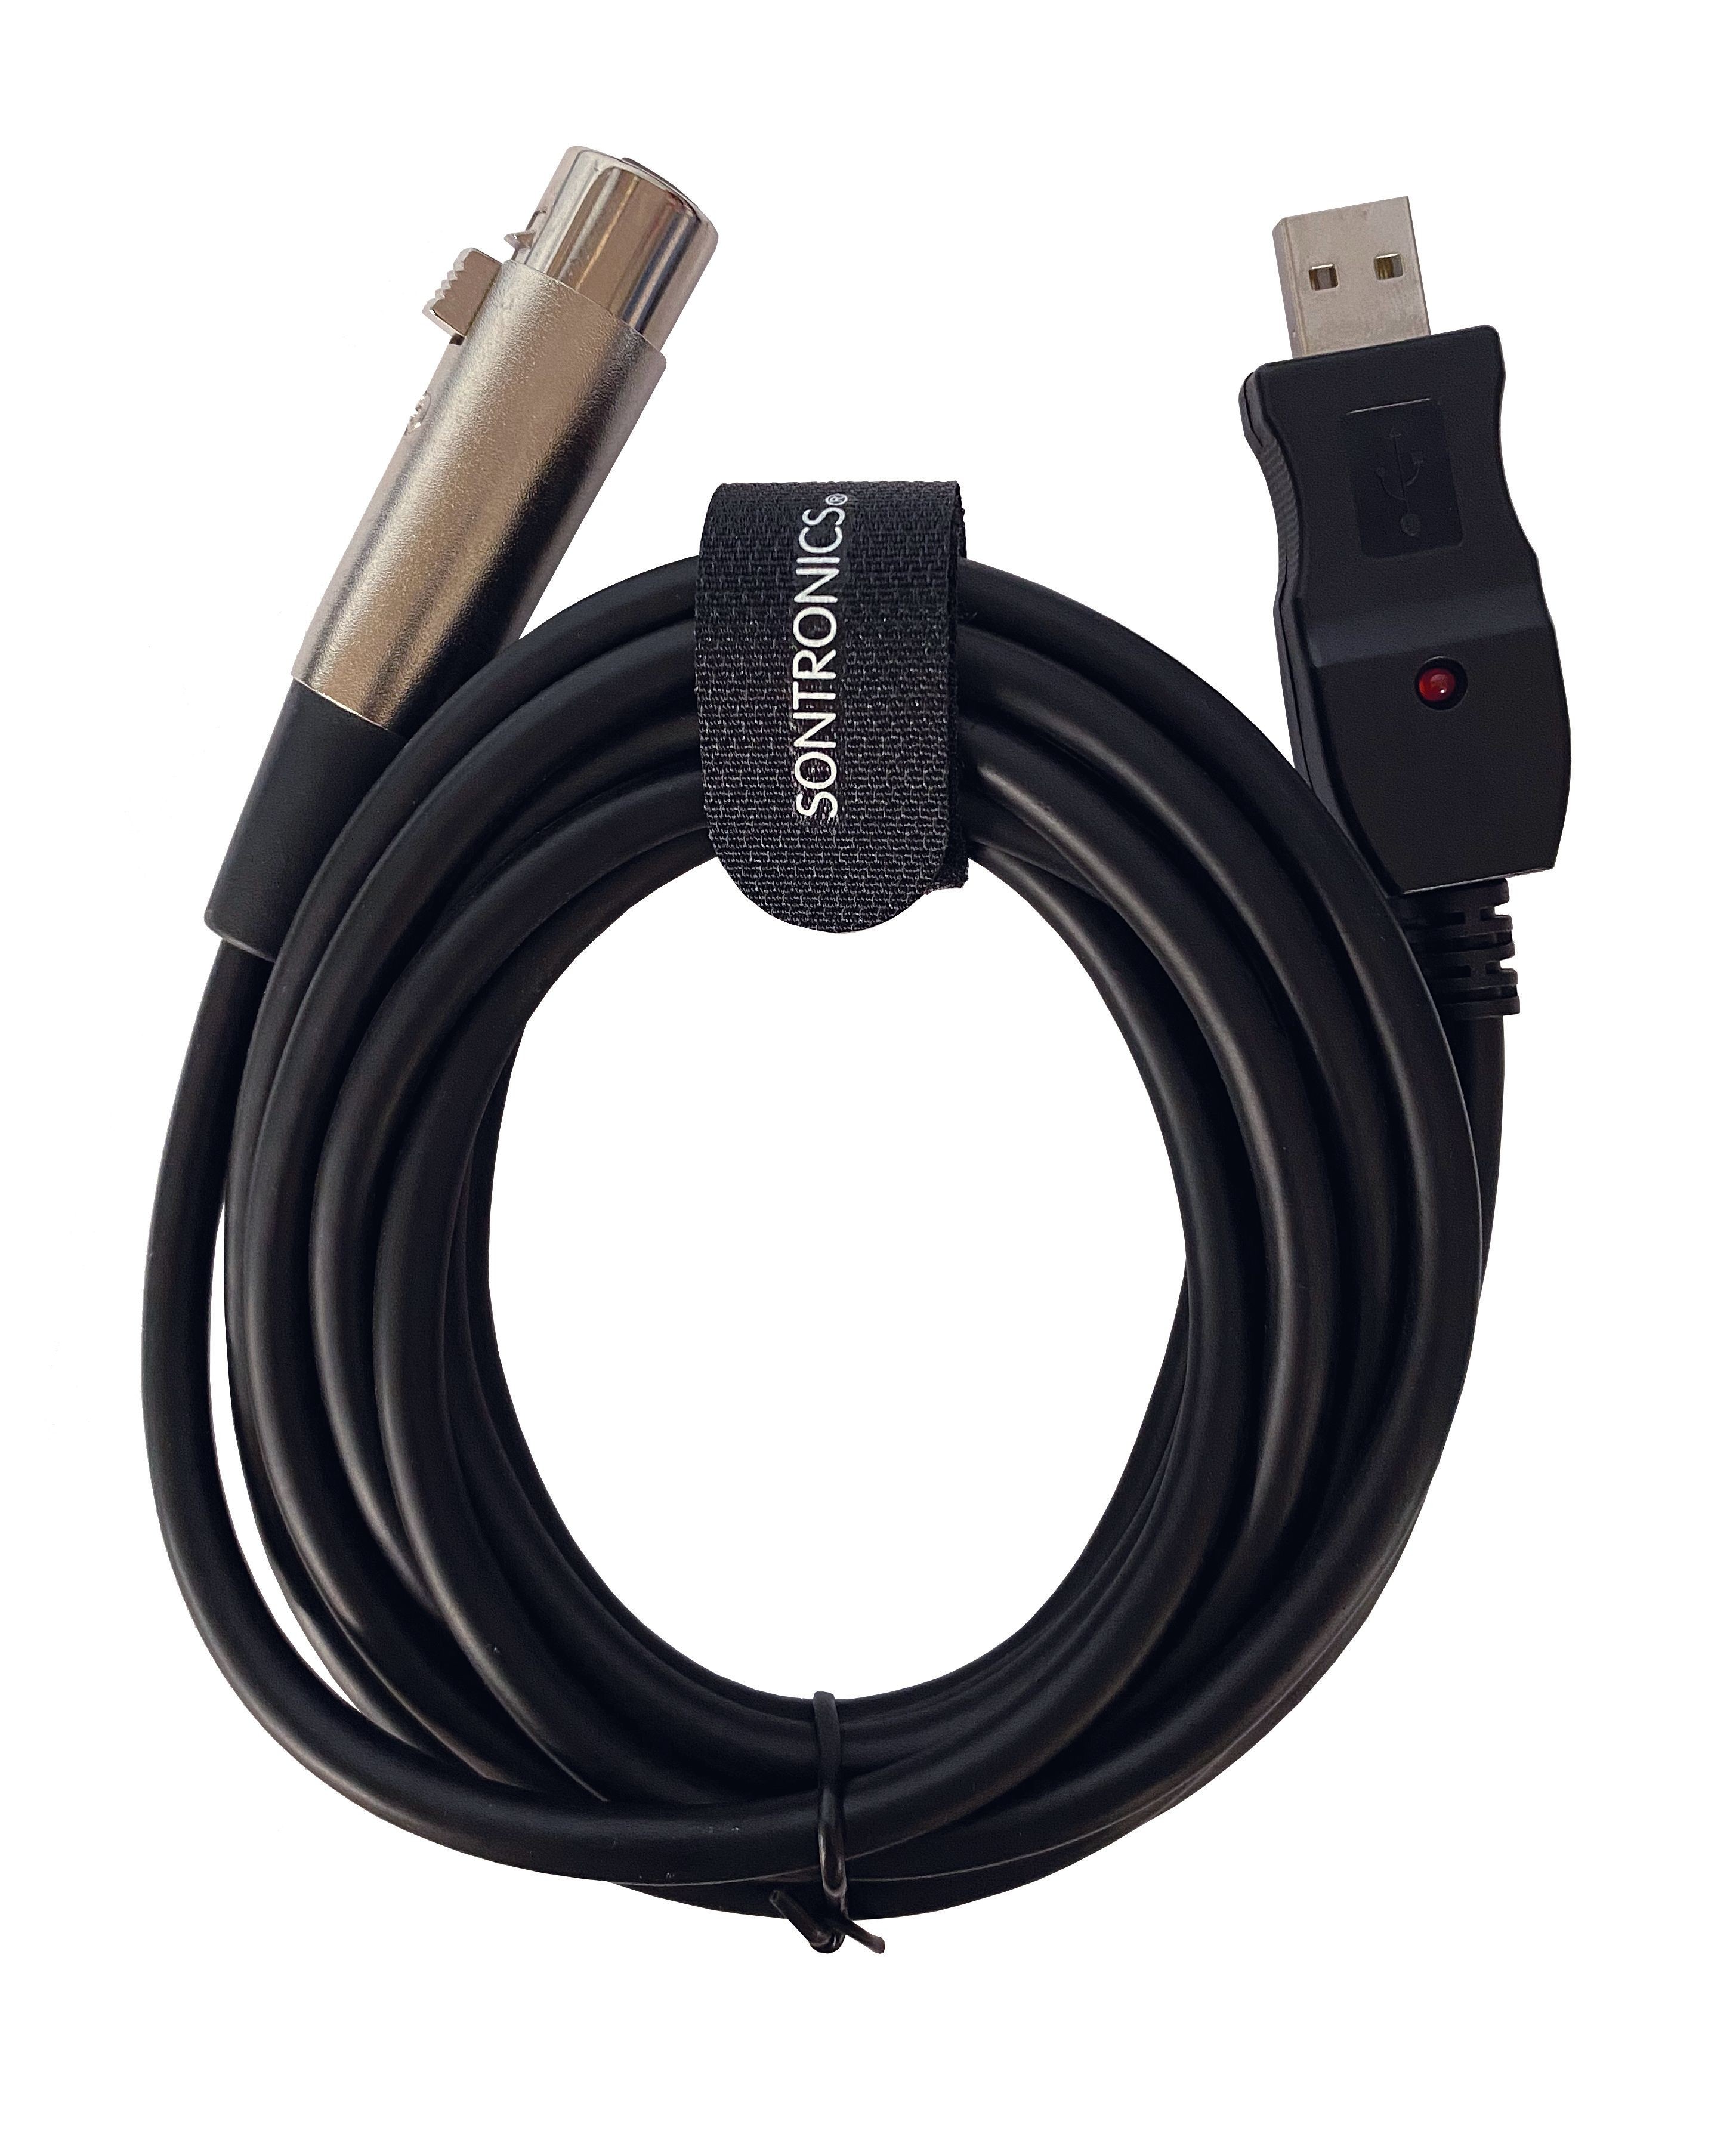 Sontronics XLR-USB Cable - 3 Metre